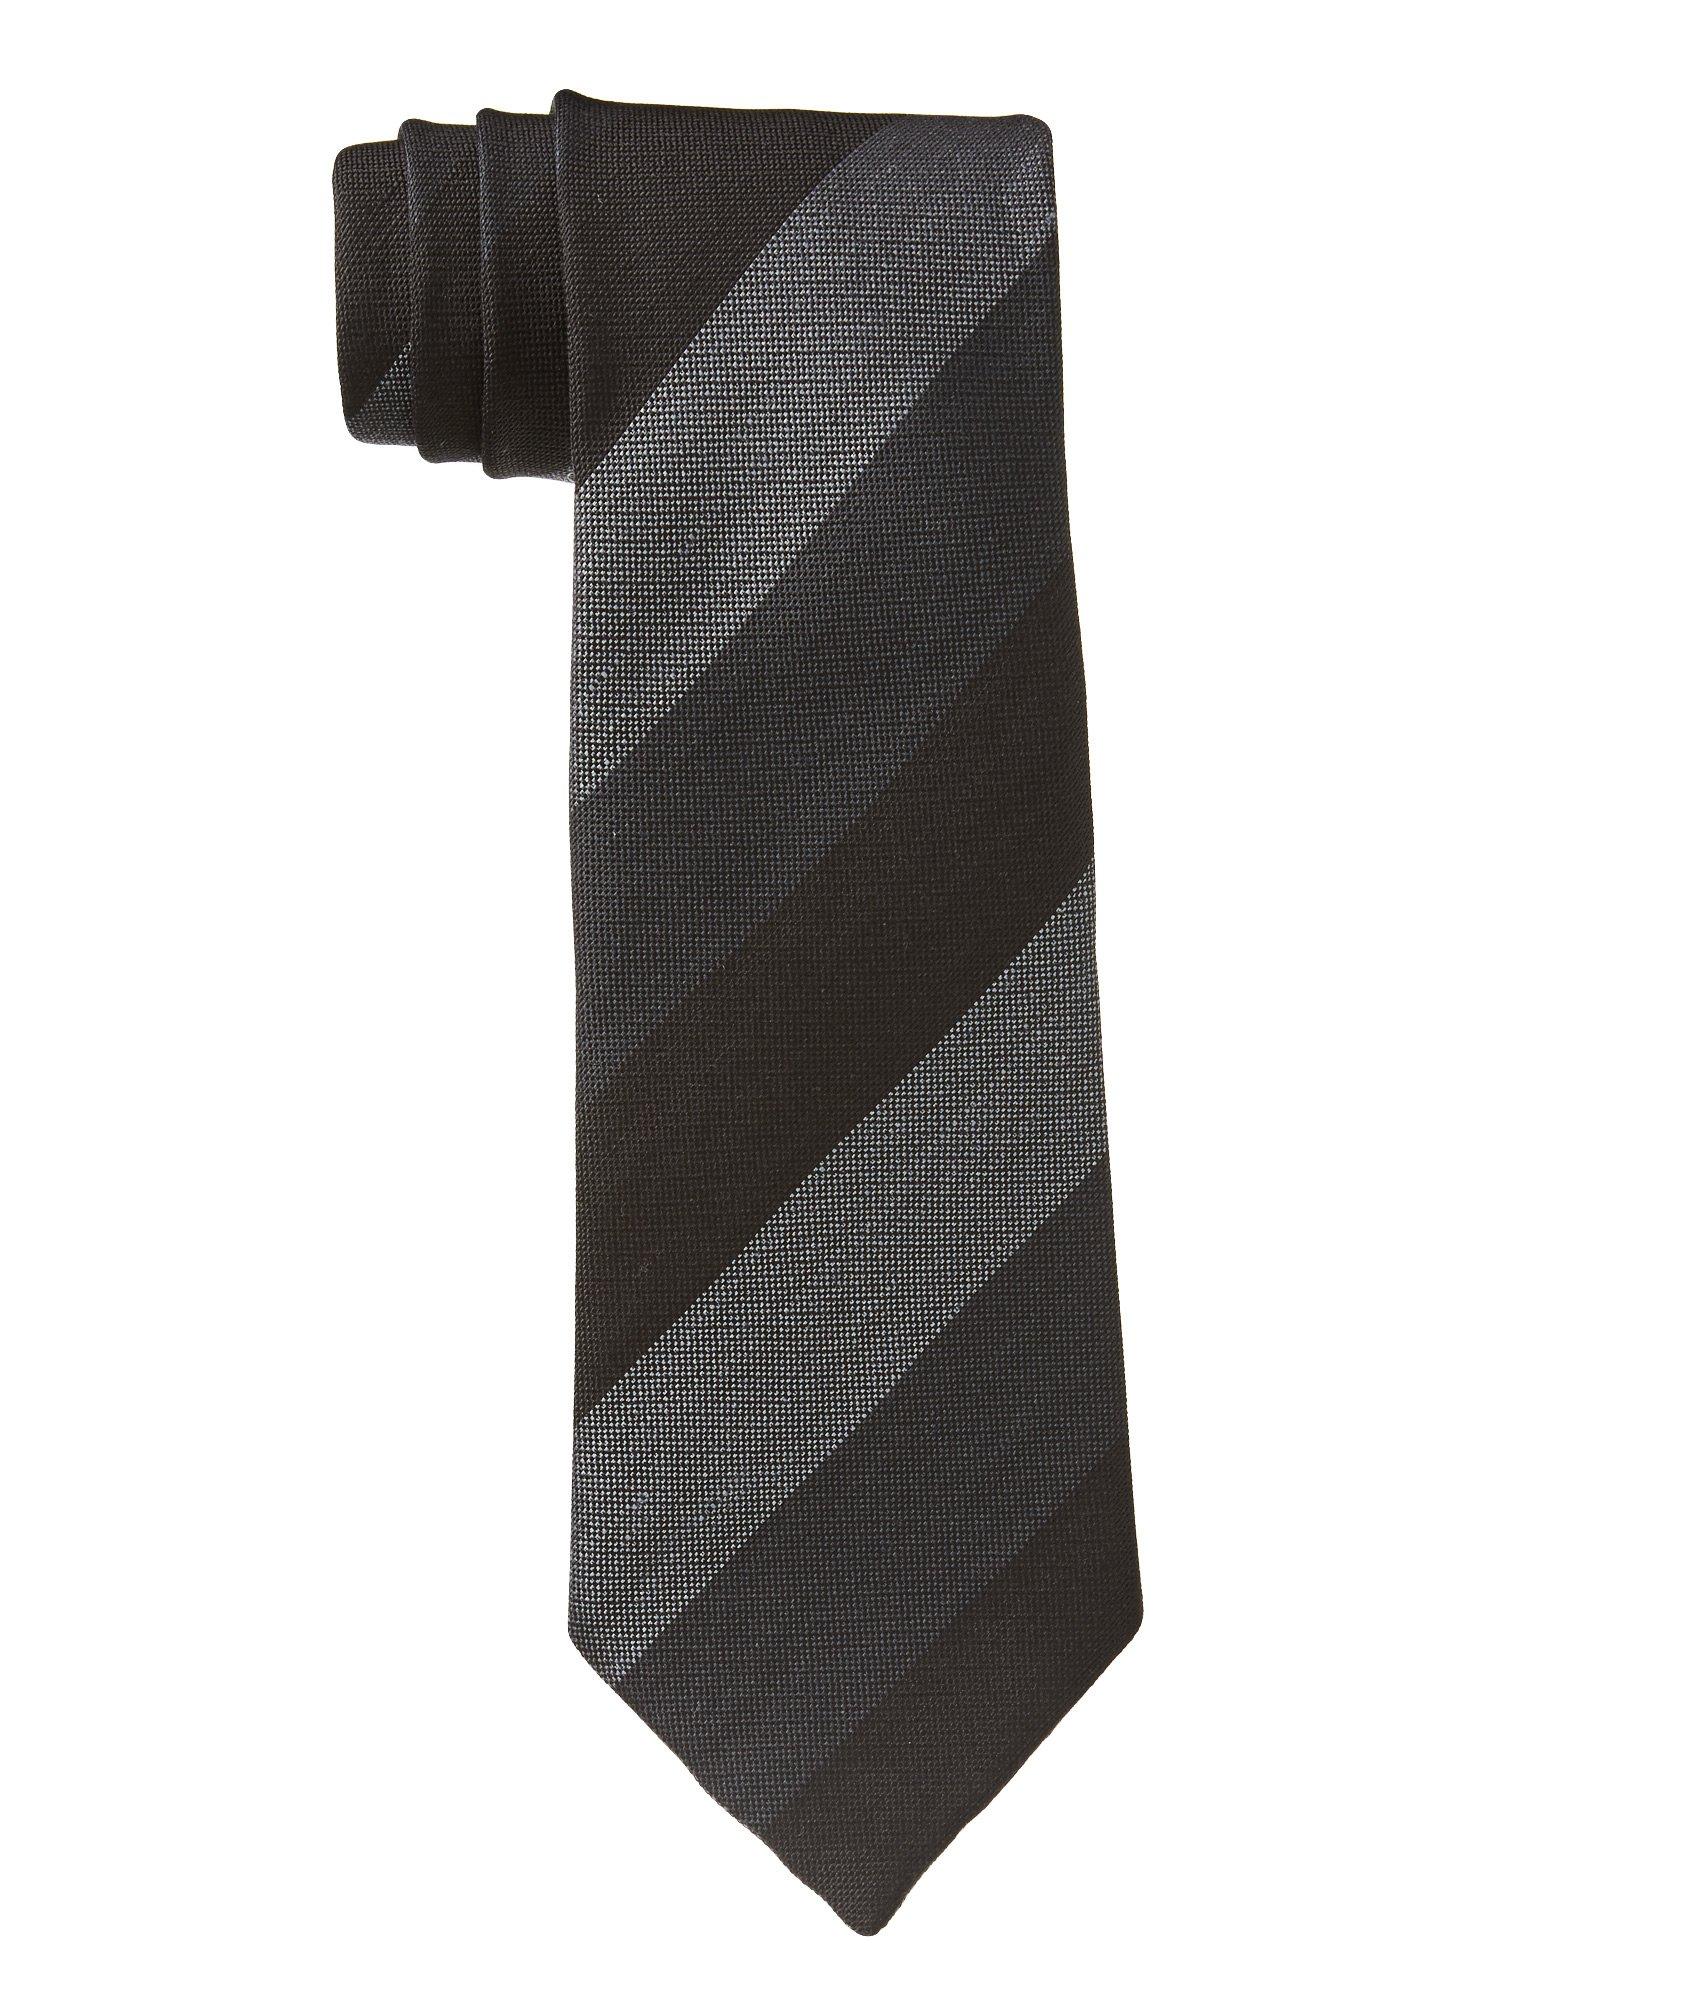 Cravate rayée en lin et soie image 0